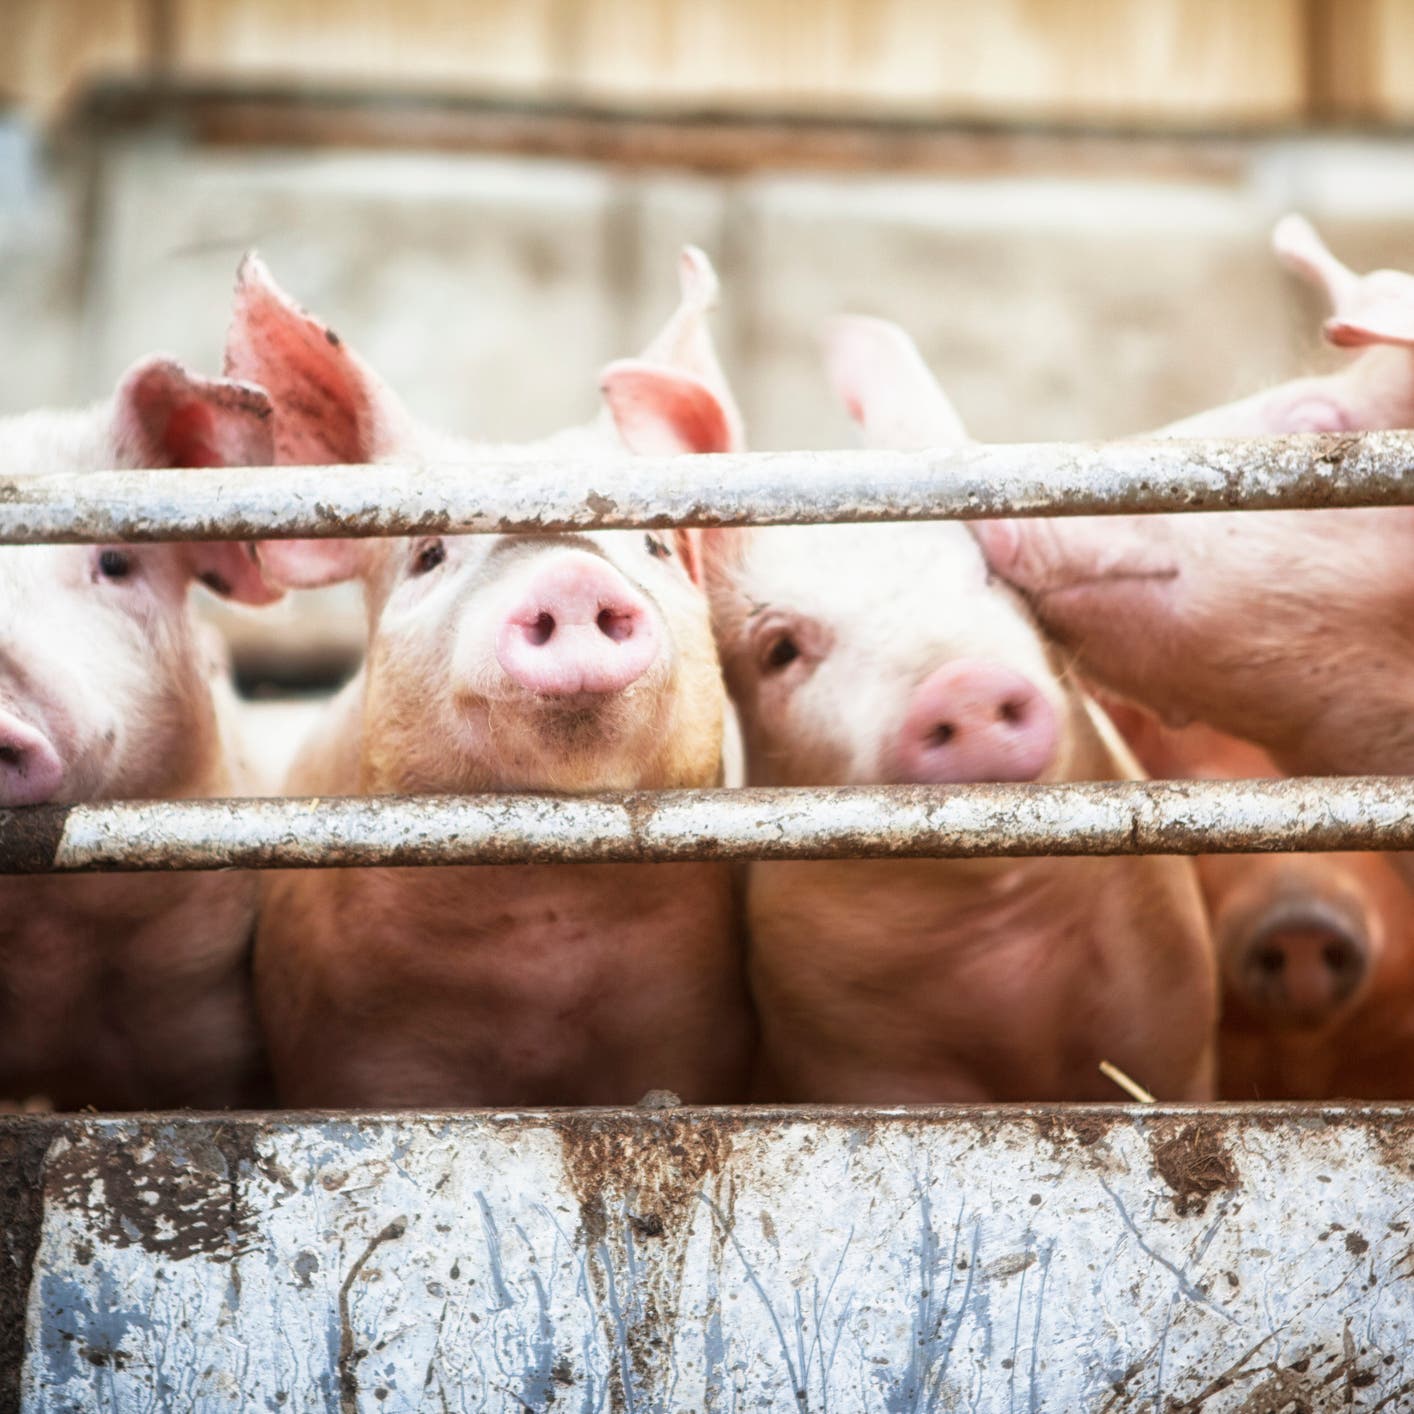 الصين تطمئن: إنفلونزا الخنازير "الجديدة" لا تصيب البشر بسهولة